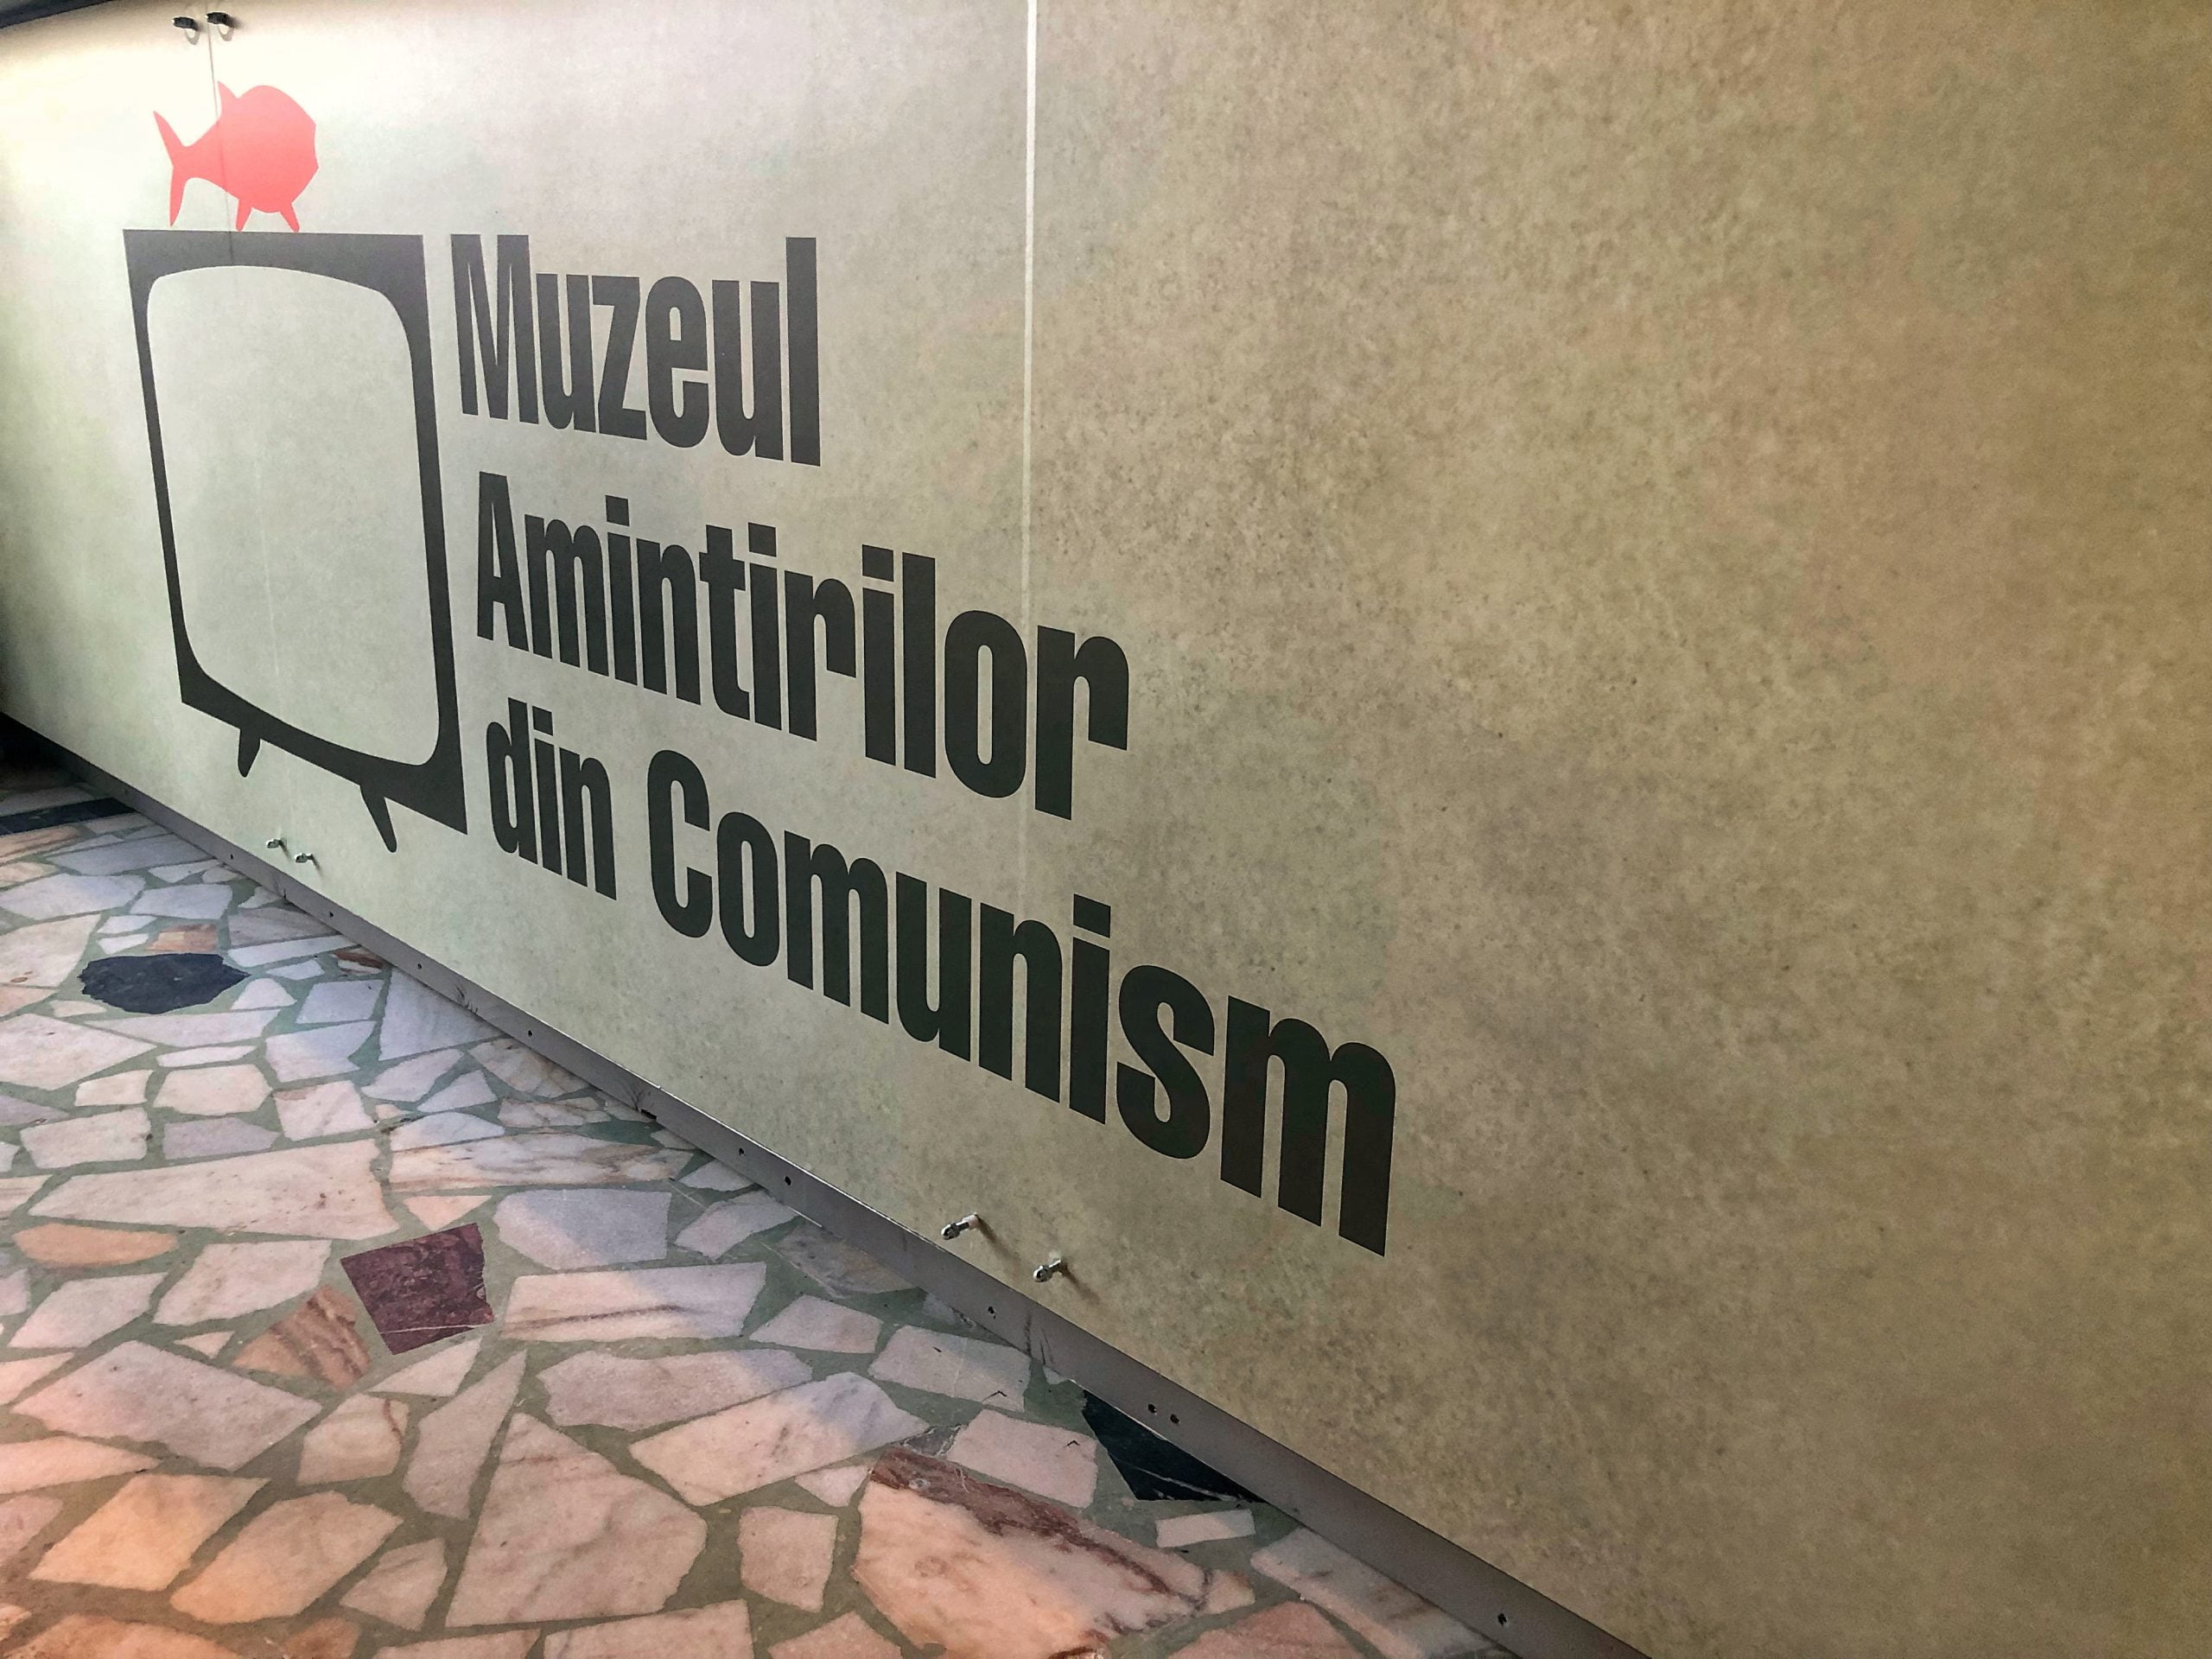 Viața de zi cu zi a românilor din comunism, “povestită” la Muzeul Amintirilor din Comunism din Brașov